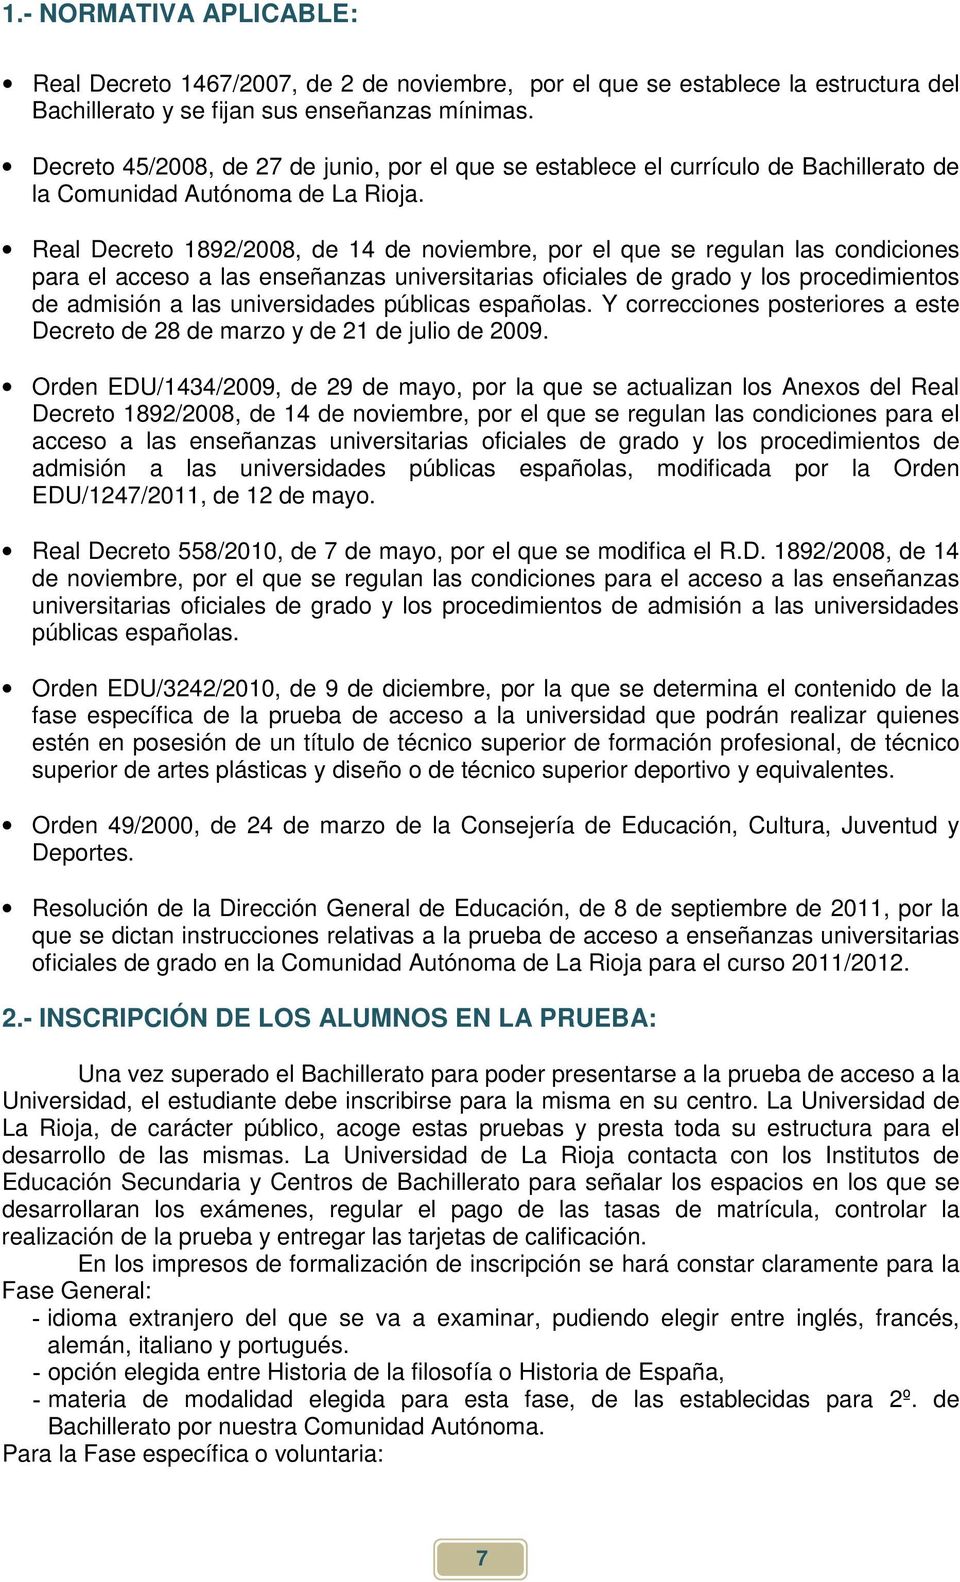 Real Decreto 1892/2008, de 14 de noviembre, por el que se regulan las condiciones para el acceso a las enseñanzas universitarias oficiales de grado y los procedimientos de admisión a las